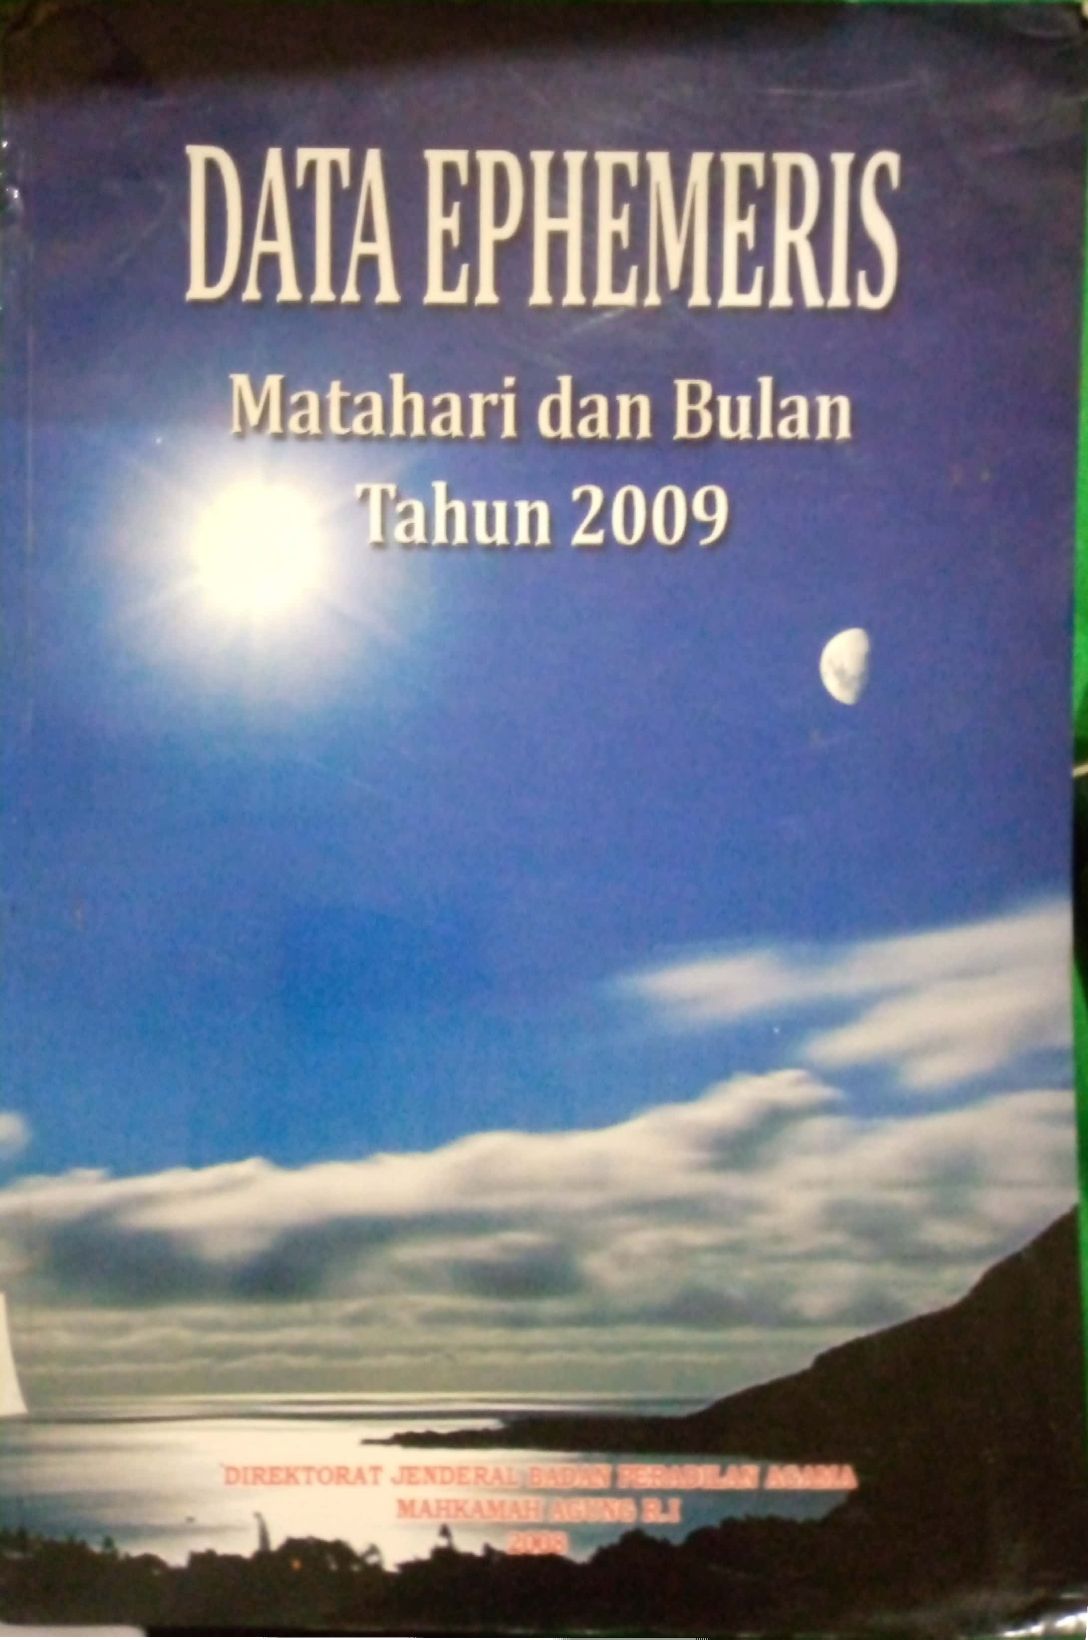 Data Ephemeris Matahari dan Bulan Tahun 2009